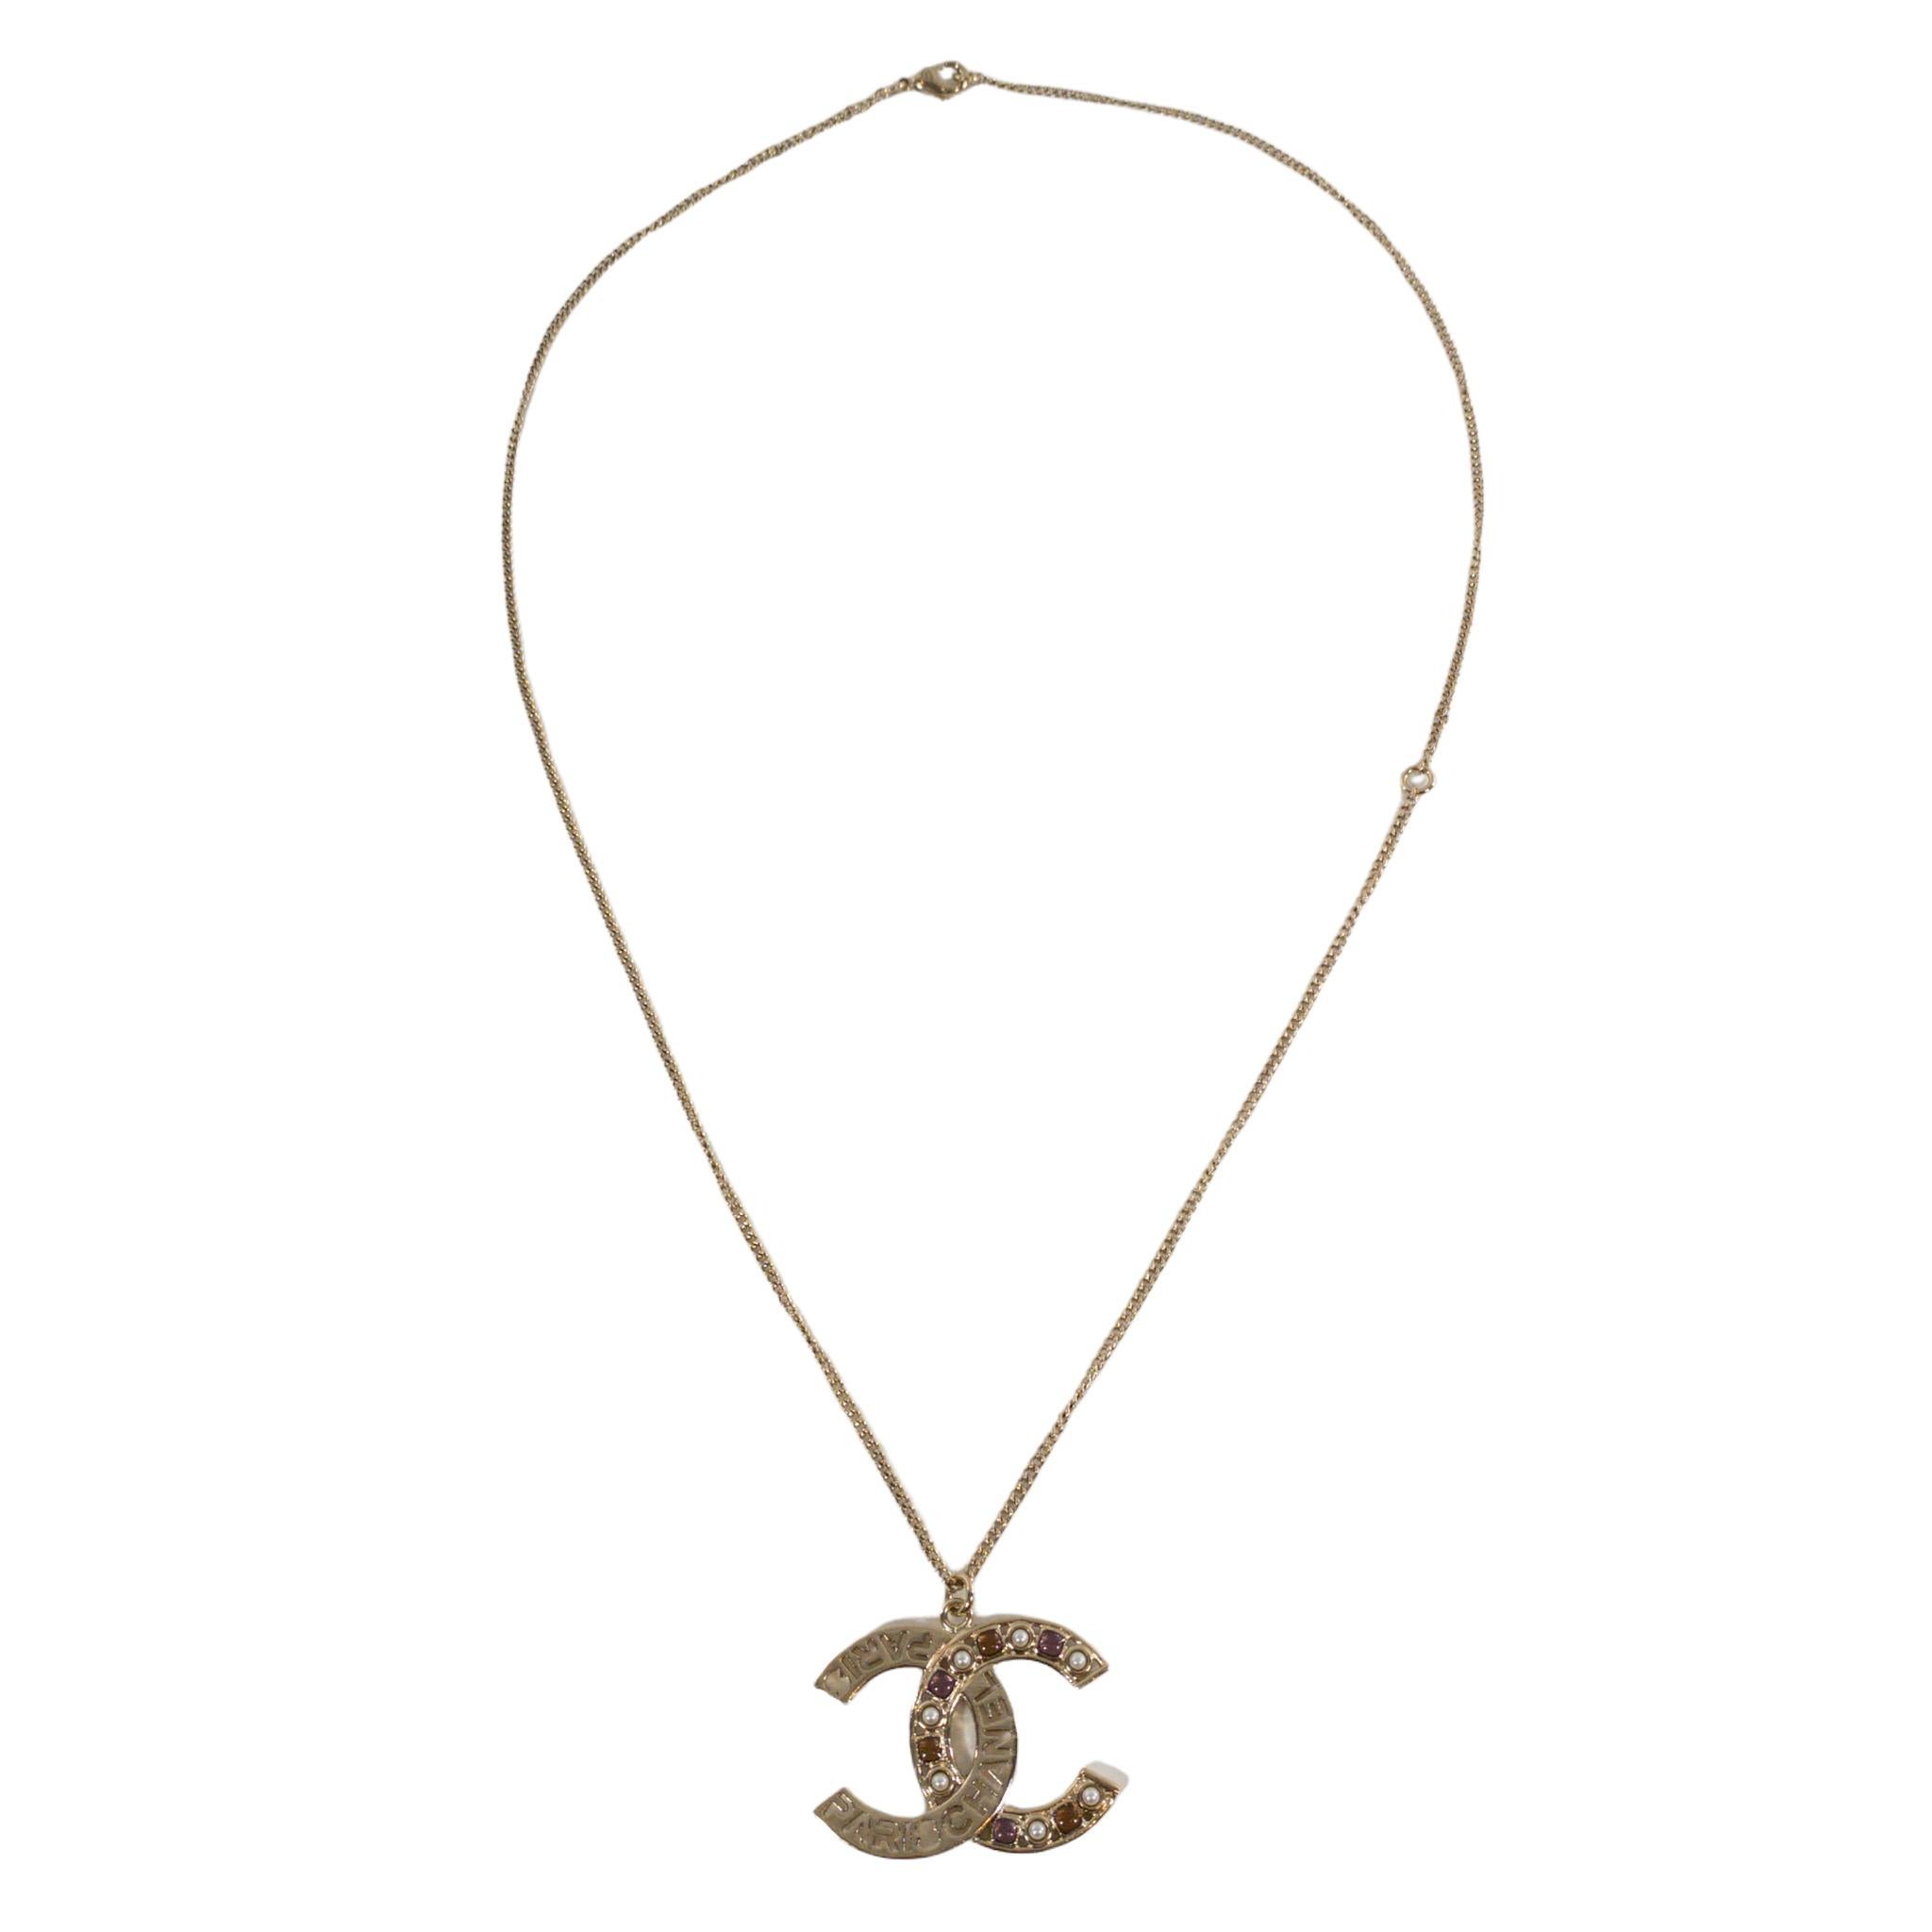 Chanel Paris Gold CC Halskette mit Steinen

Dies ist eine authentische Chanel-Halskette mit ausgeschnittenem Schriftzug, Perlen und Steinen. Goldfarbenes Metall.

Zusätzliche Informationen:
Kettenlänge 11,5